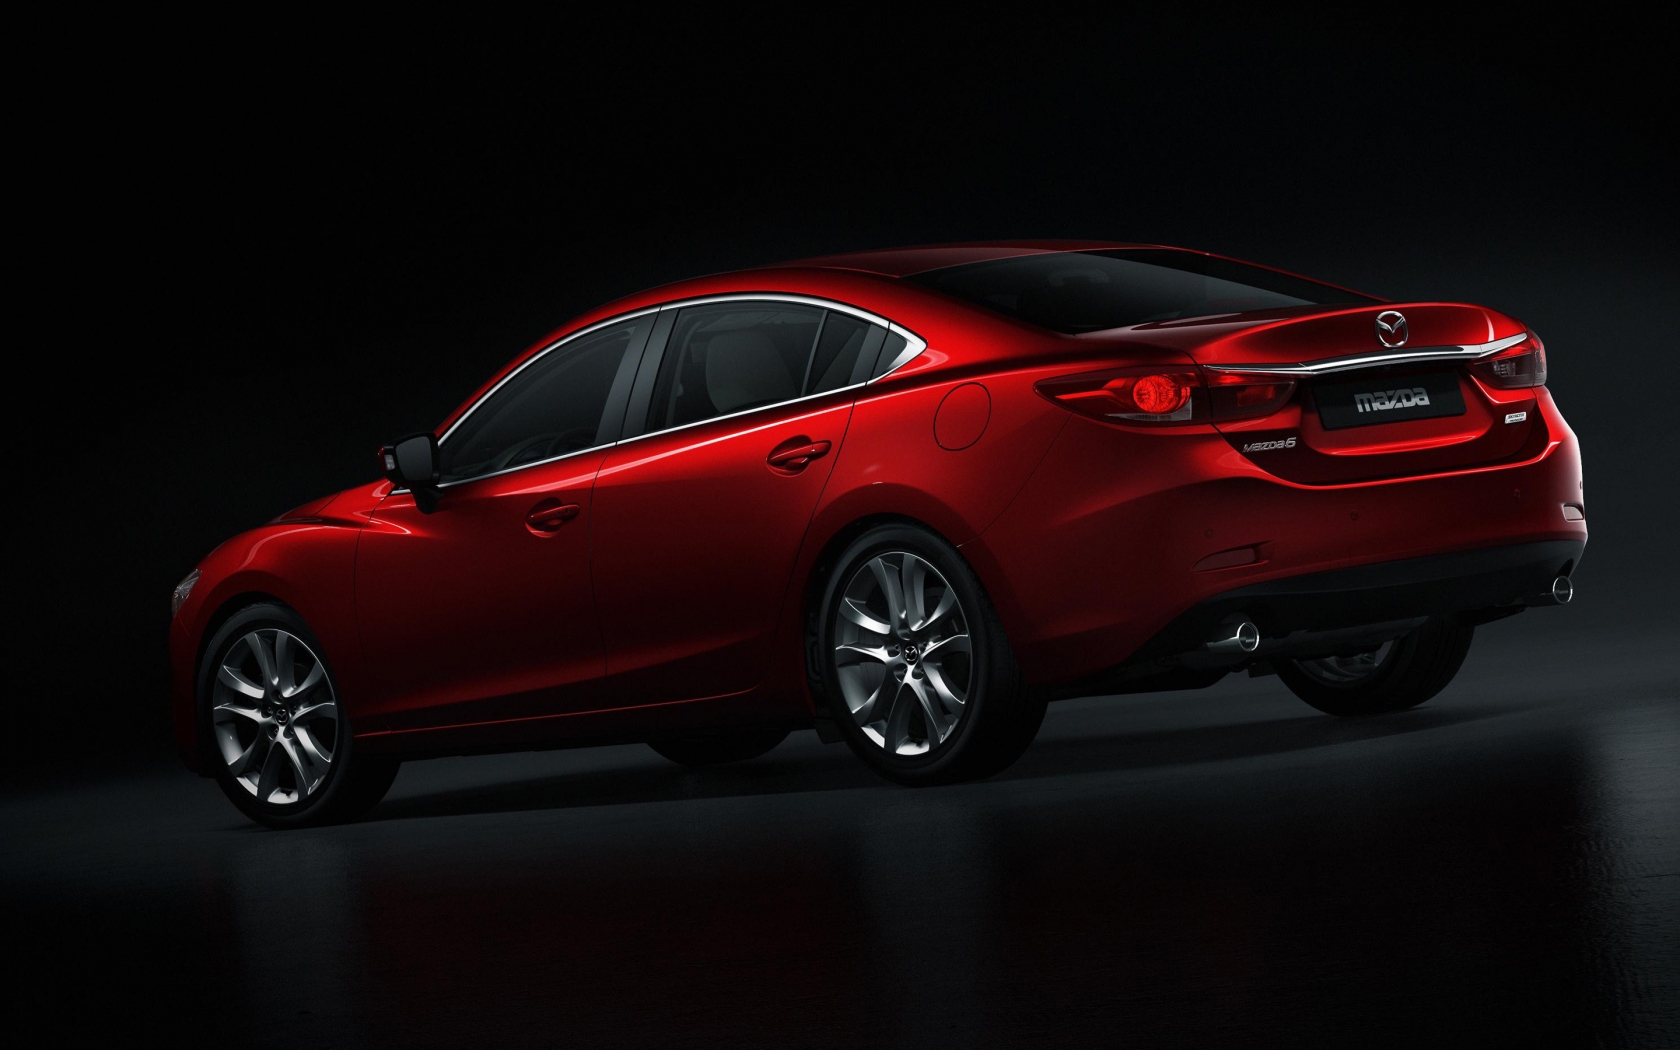 Mazda 6 2014 Rear Studio for 1680 x 1050 widescreen resolution